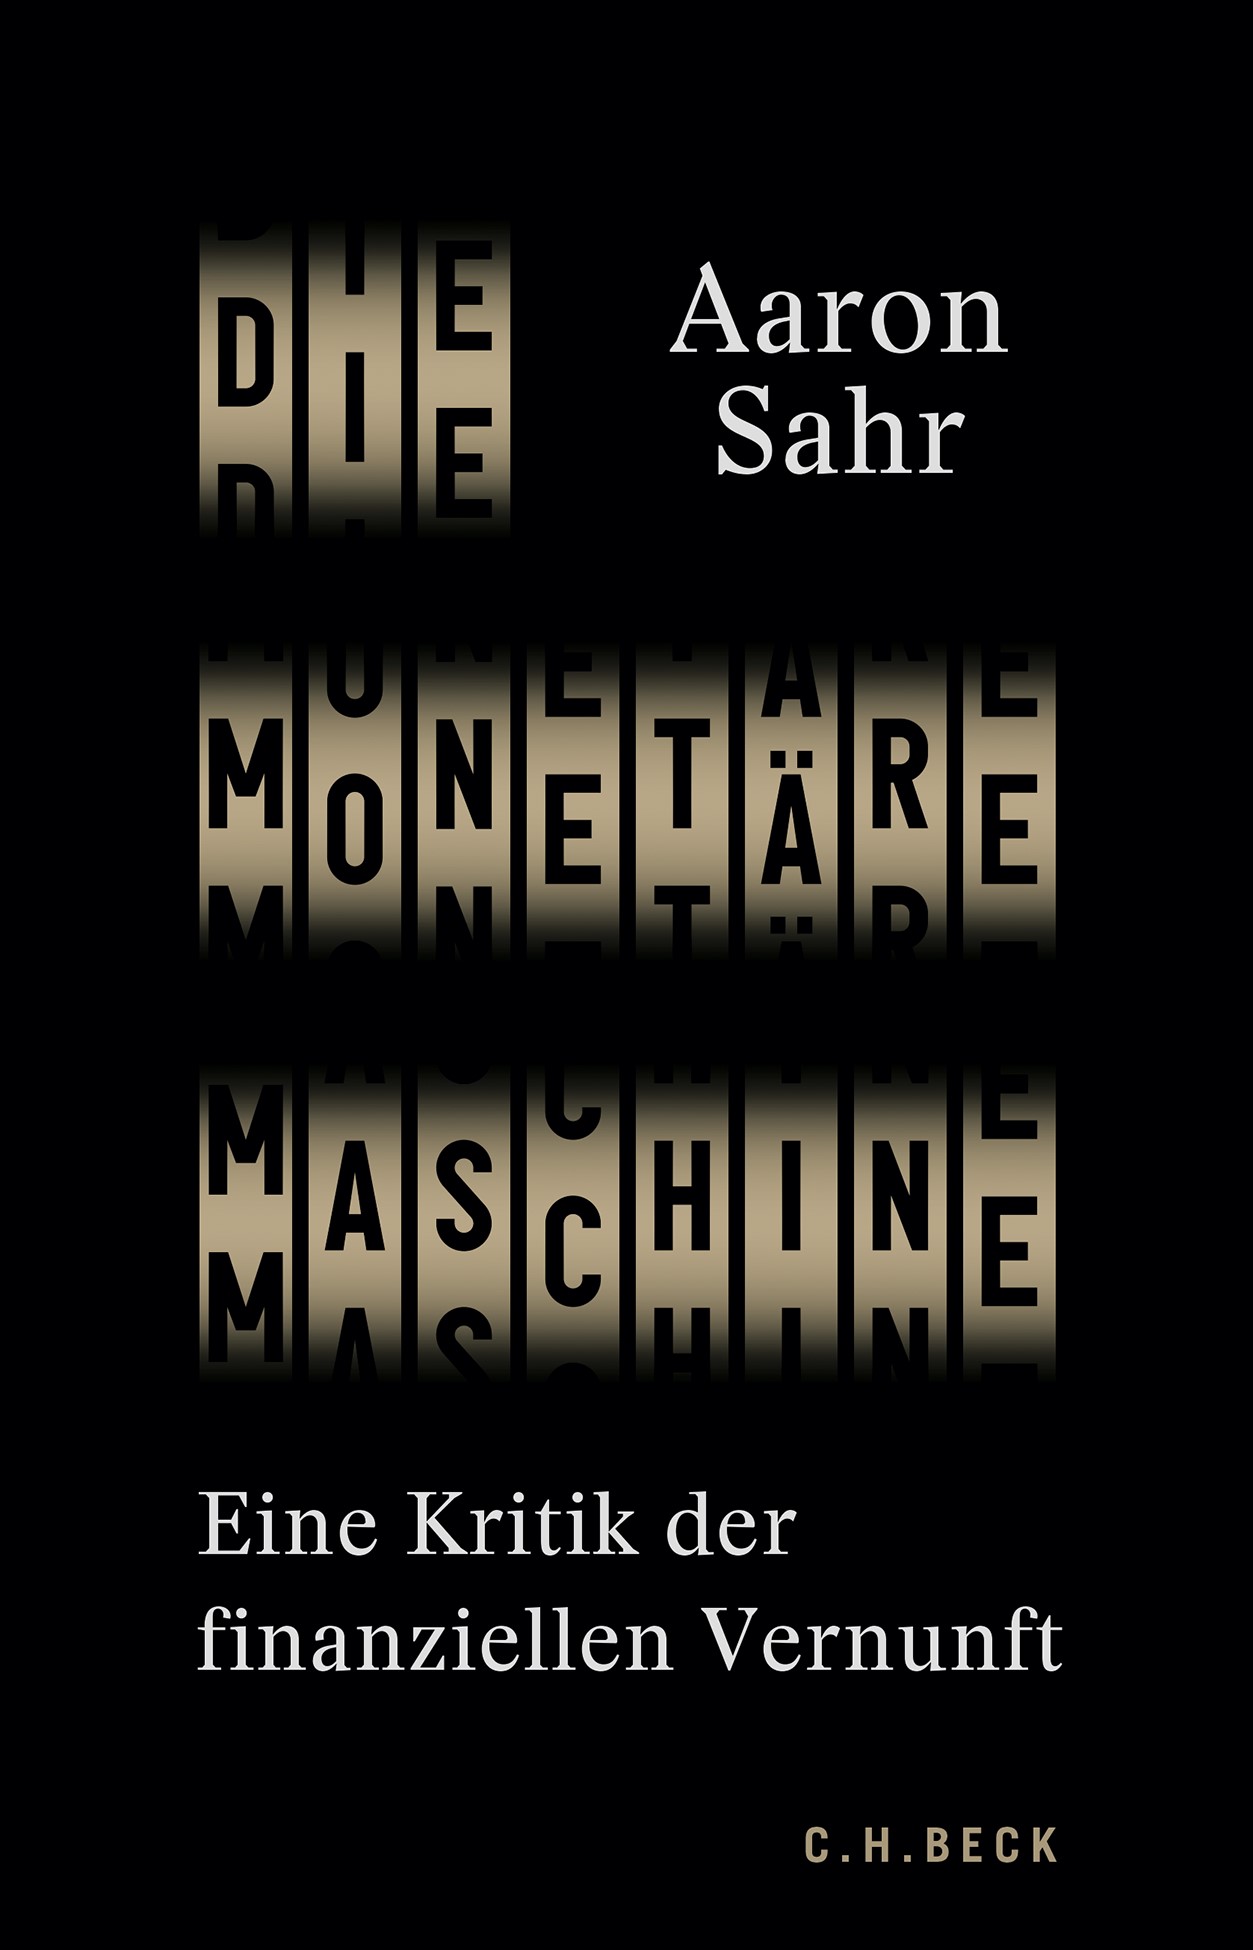 Cover: Sahr, Aaron, Die monetäre Maschine